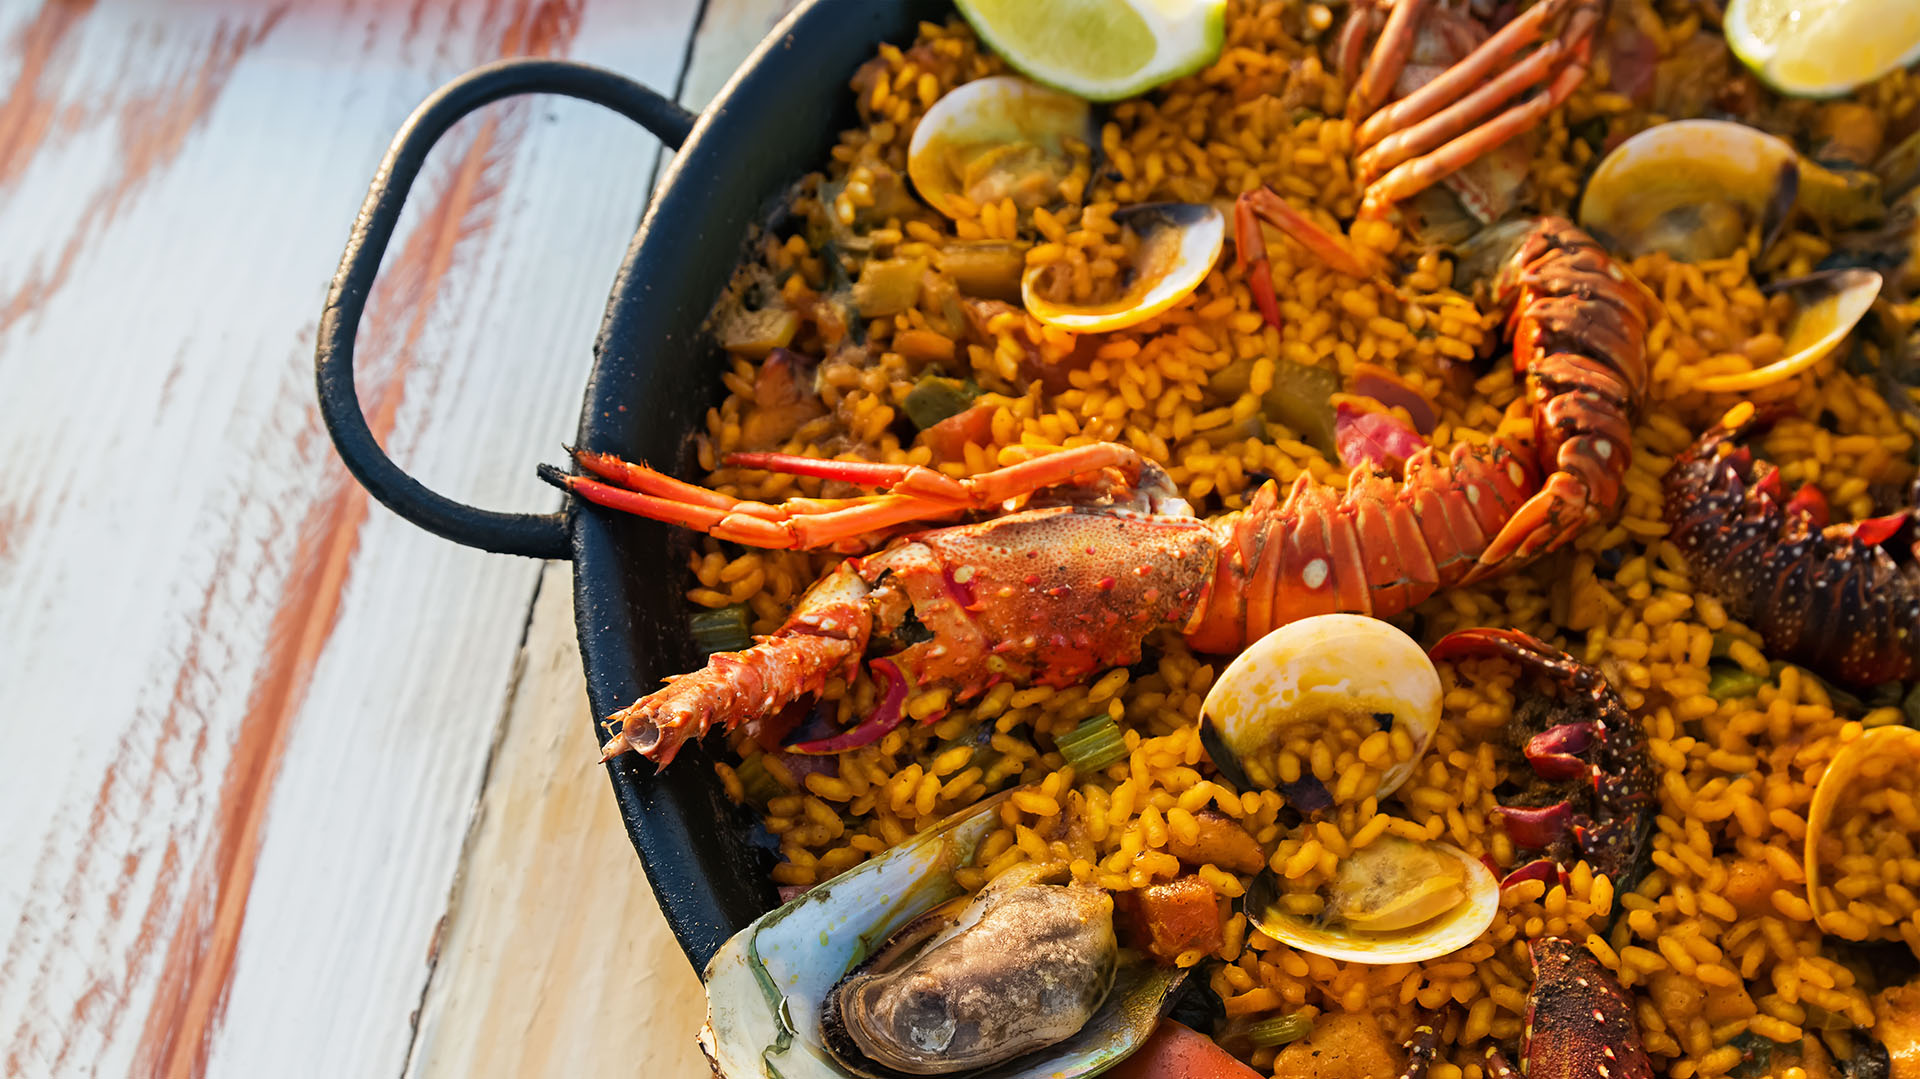 Mariscos en Miami: los 6 mejores restaurantes para degustar la pesca local  - Infobae